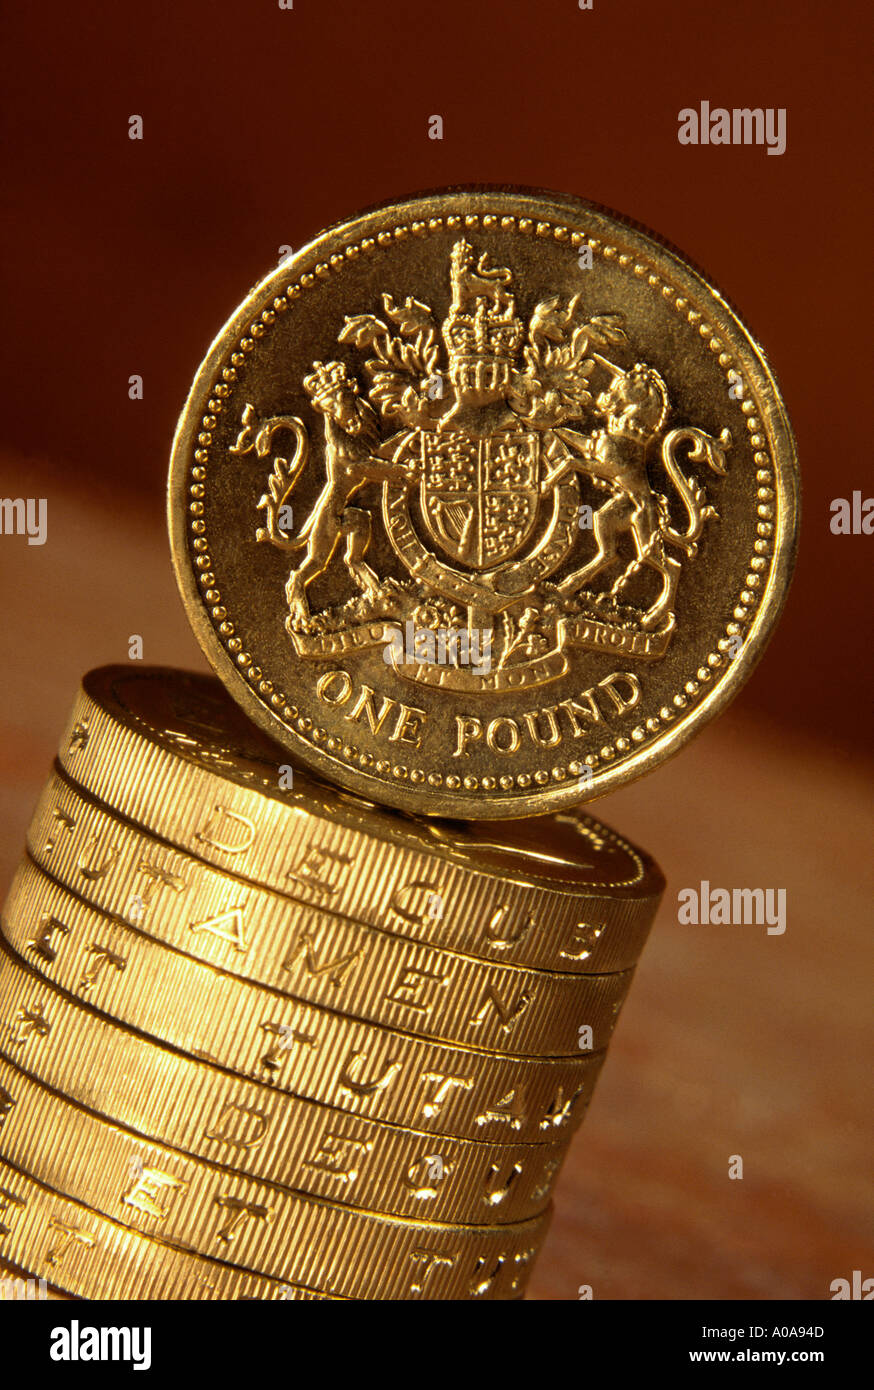 UK pound coins Stock Photo